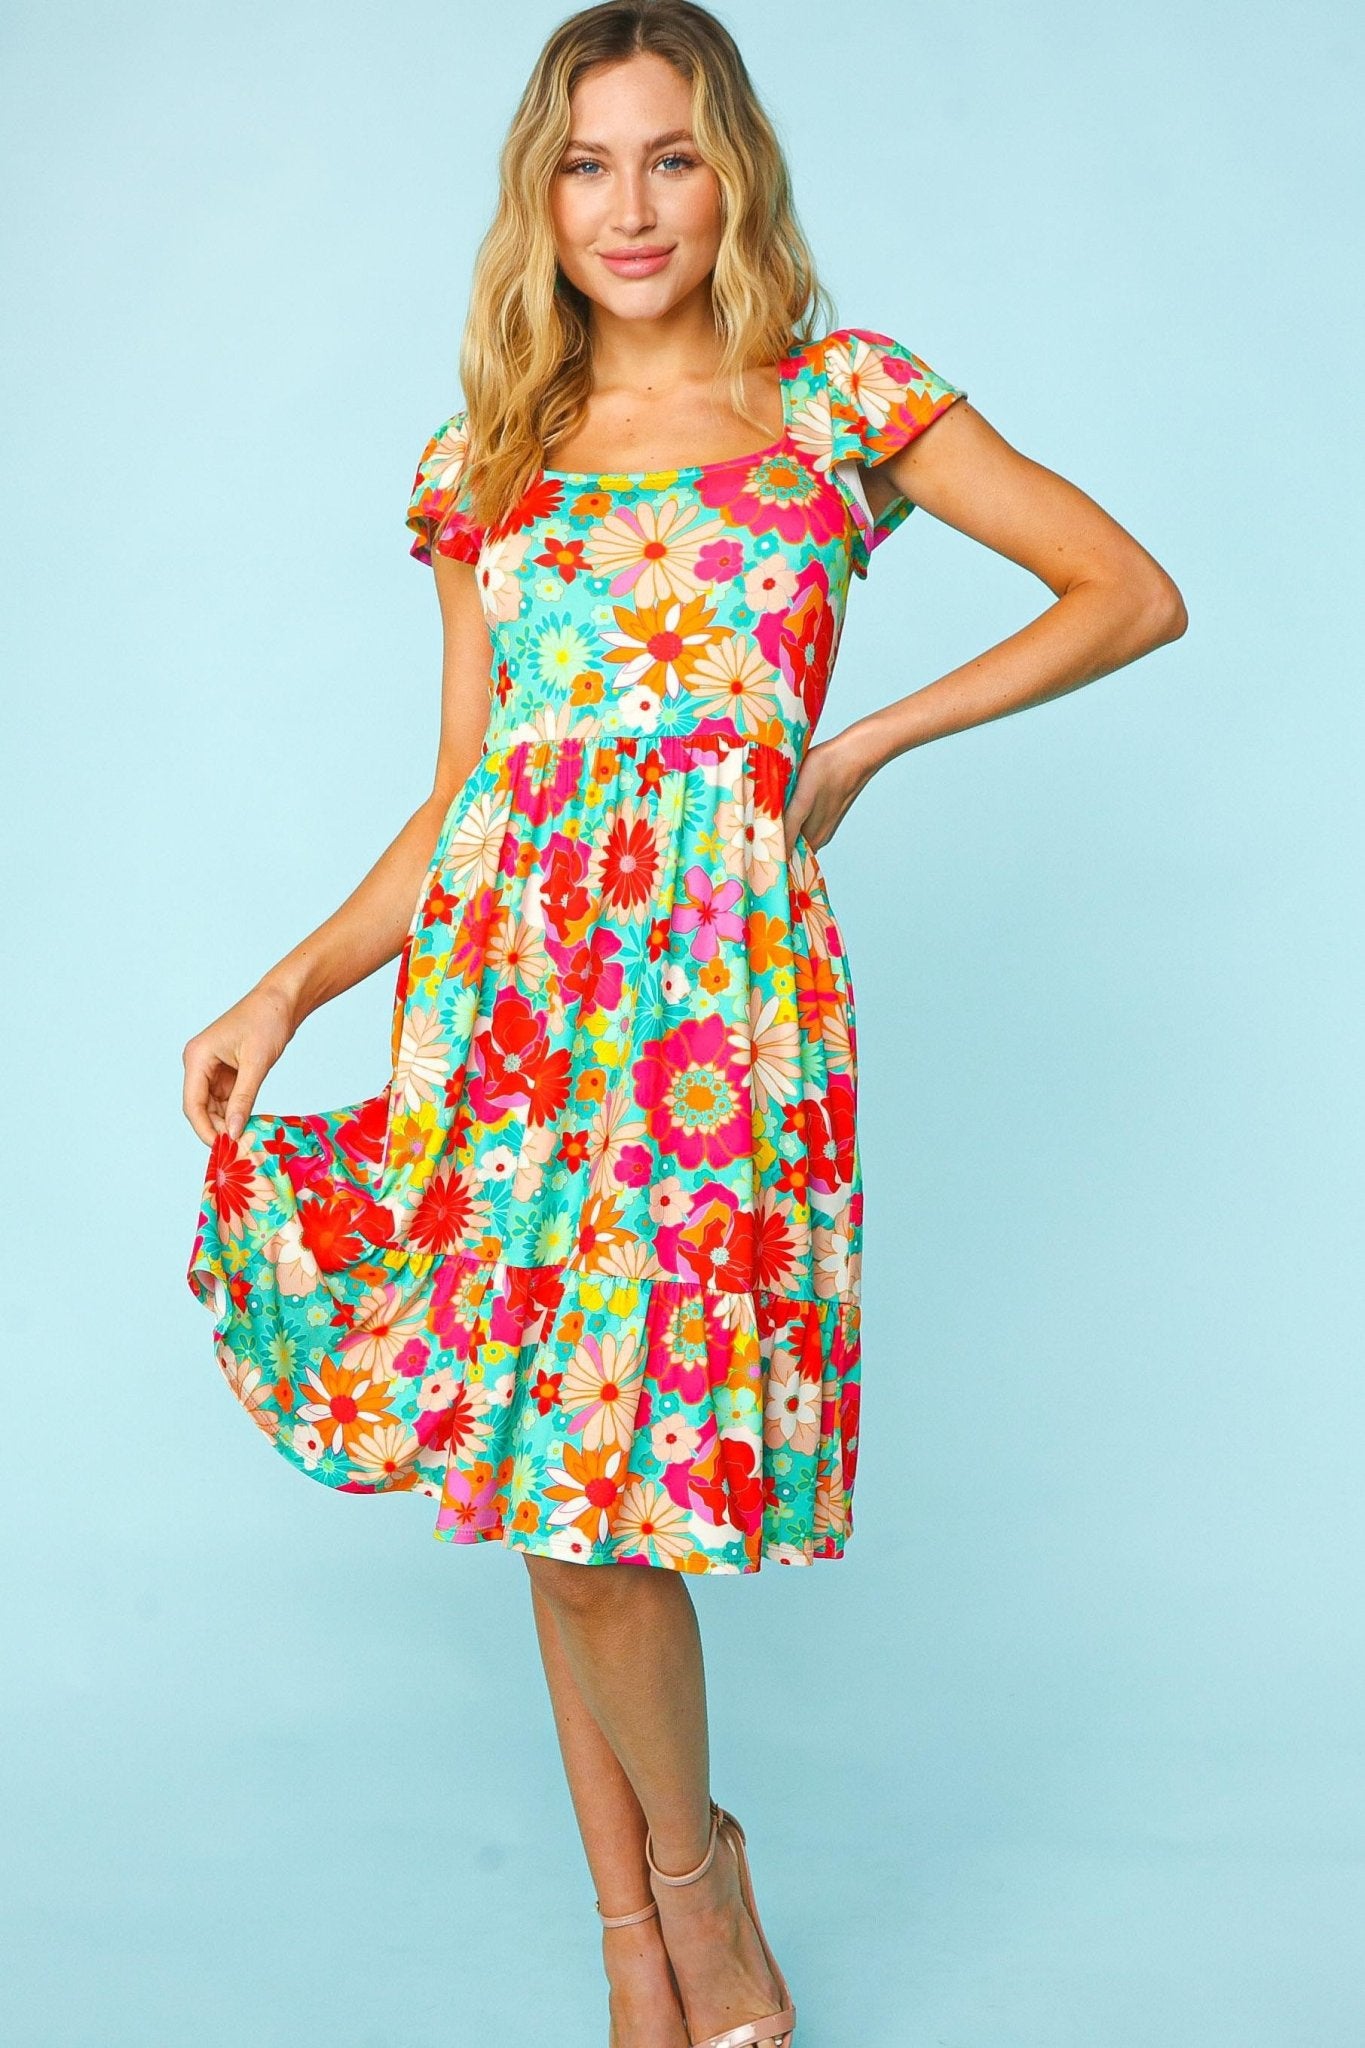 Floral Print Short Sleeve Mini Dress in Fuchsia MintMini DressHaptics